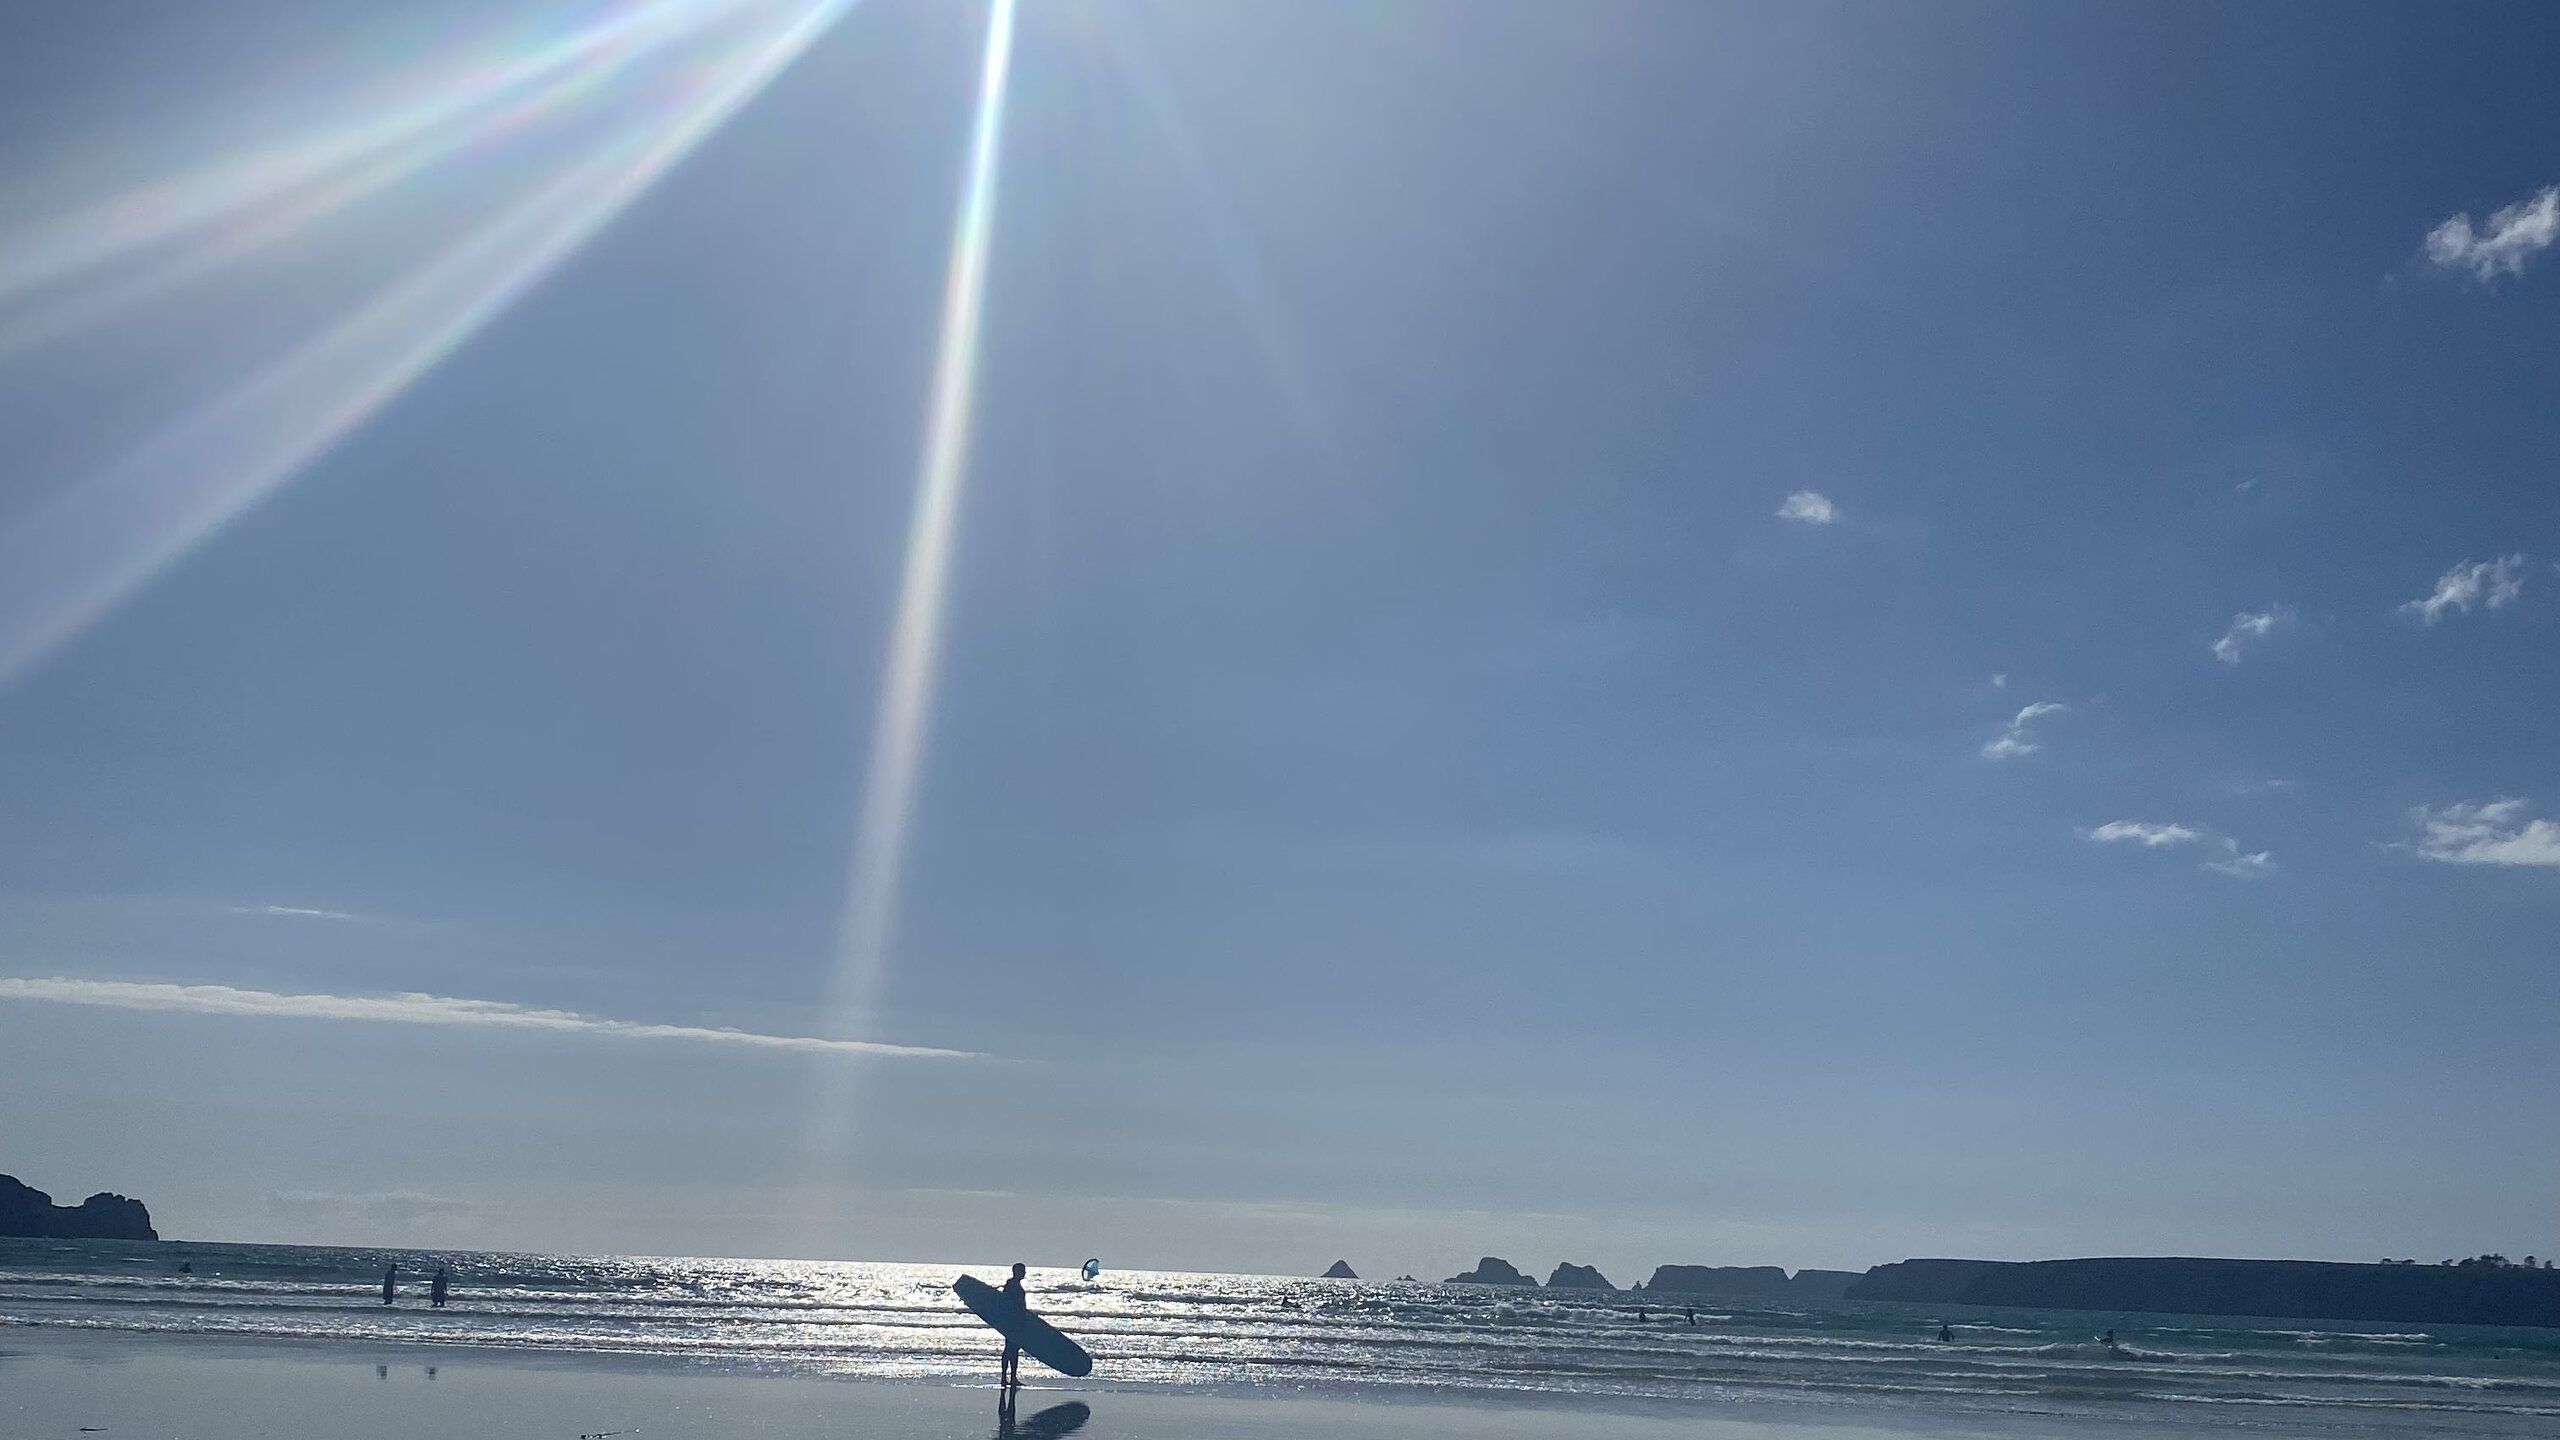 Am Strand. Blauer Himmel, Sonnenschein und ein einsamer Surfer mit seinem Board unter dem Arm.